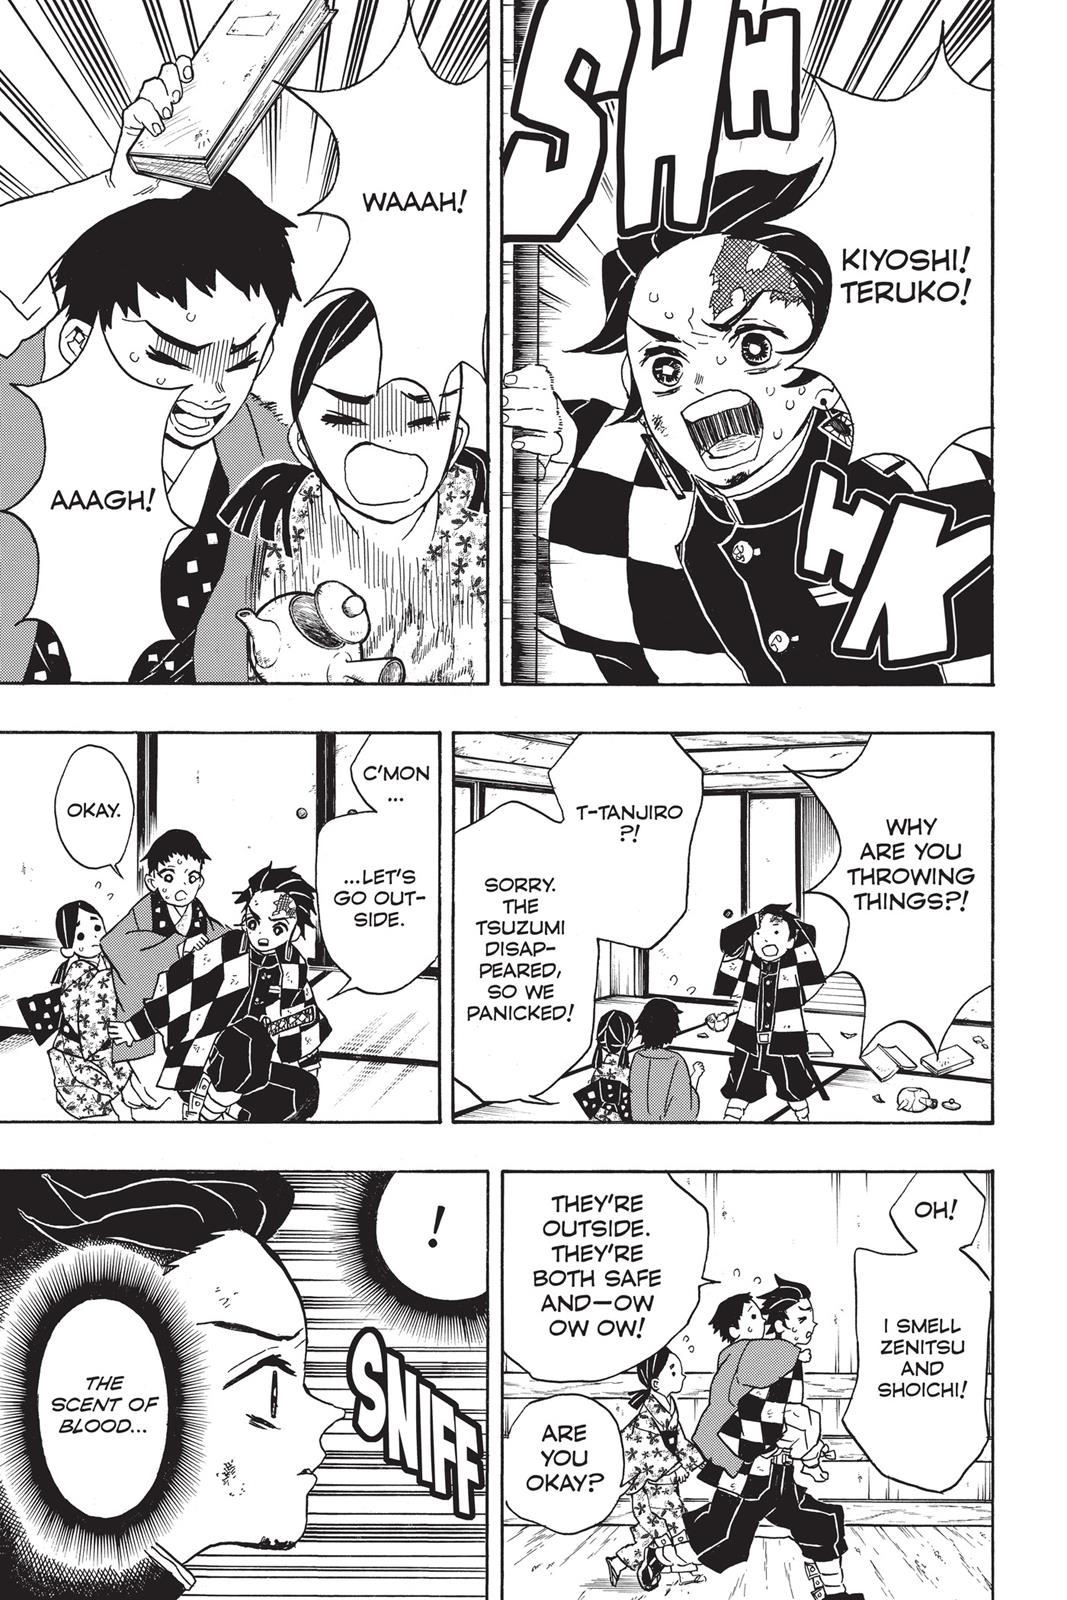 Demon Slayer Manga Manga Chapter - 25 - image 10